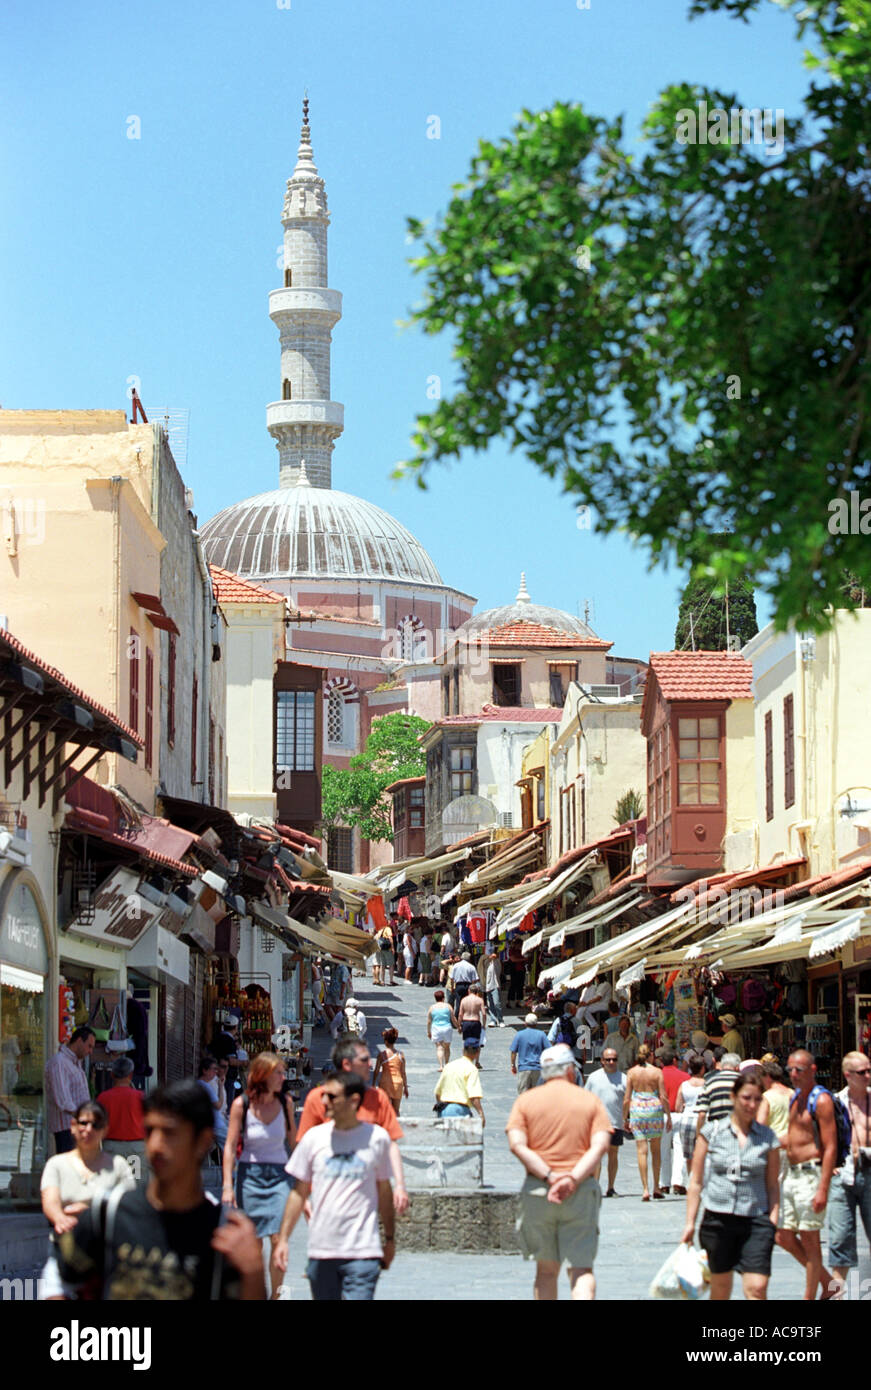 Rue commerçante, Mosquée et minaret dans la vieille ville de Rhodes Banque D'Images